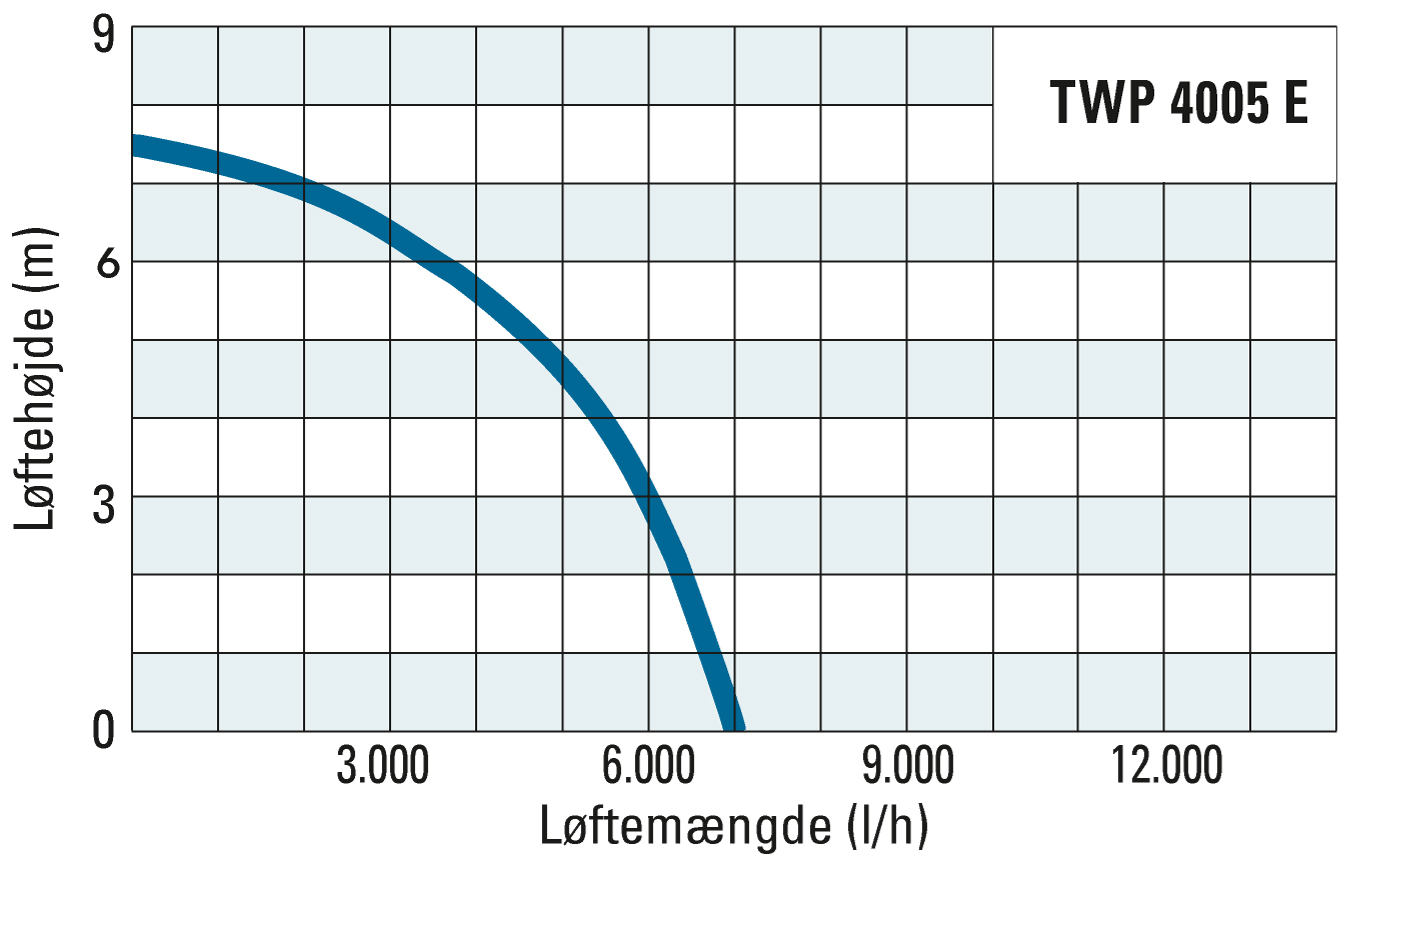 Transporthøjde og transportmængde for TWP 4005 E